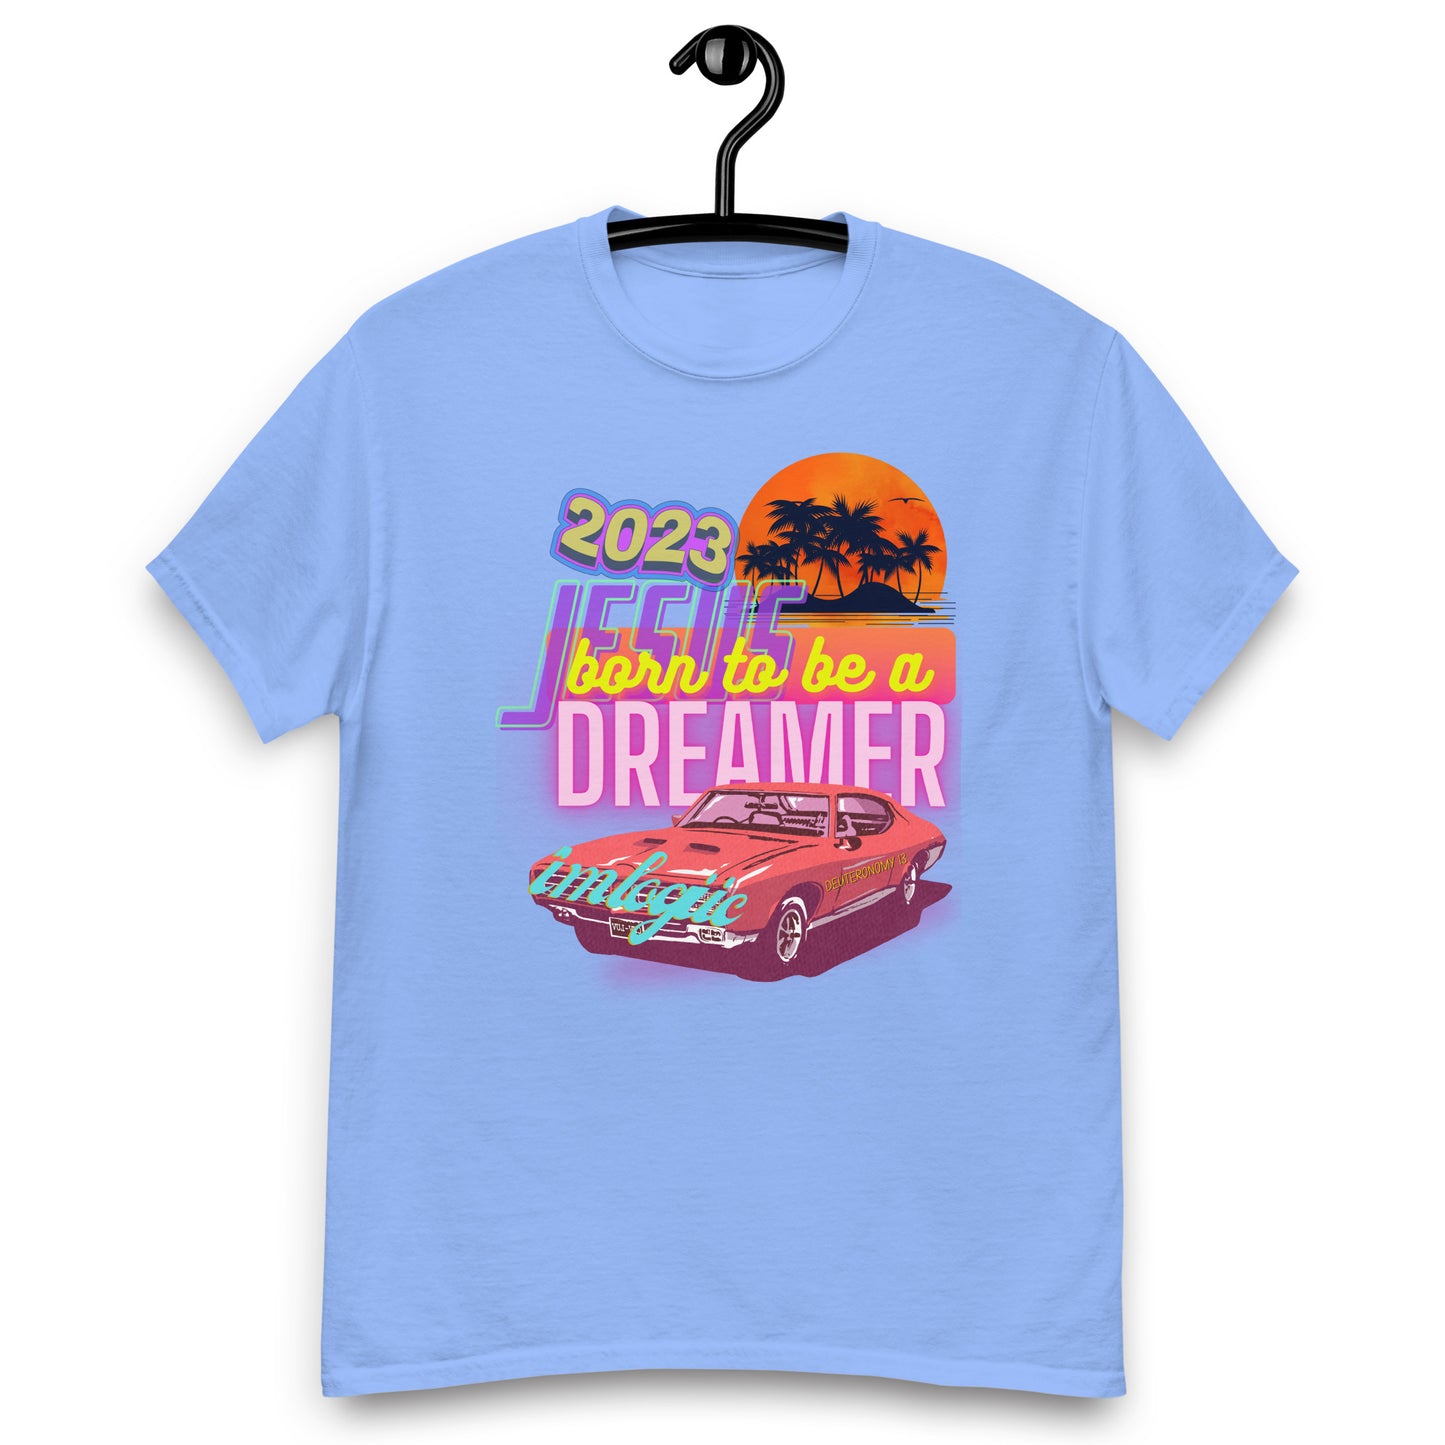 Dreamer Christian Tshirt